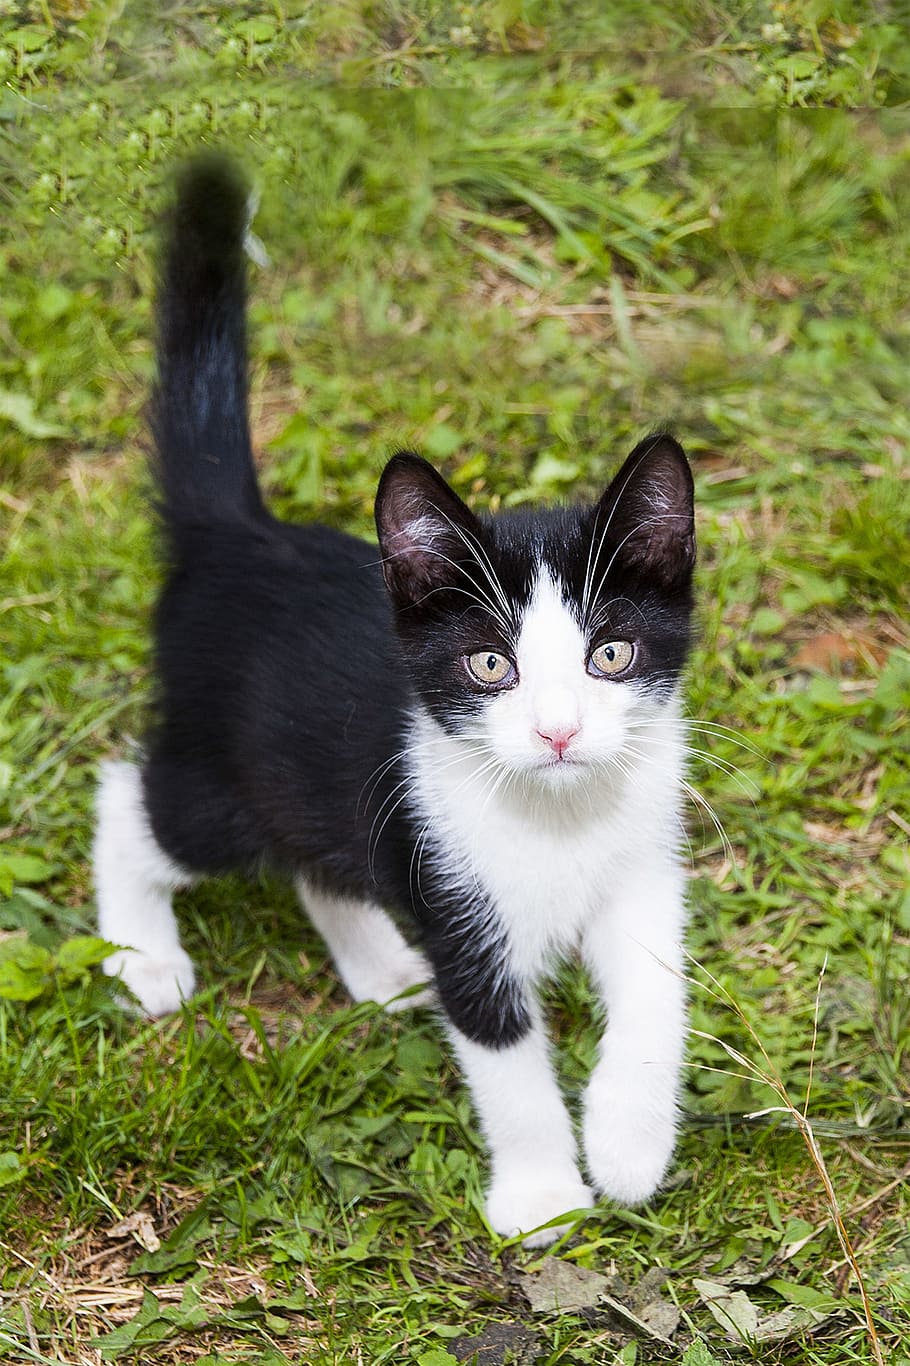 pendek, bulu, putih, hitam, mobil, mobil hitam, anak kucing, hewan, kucing kecil, hitam dan putih